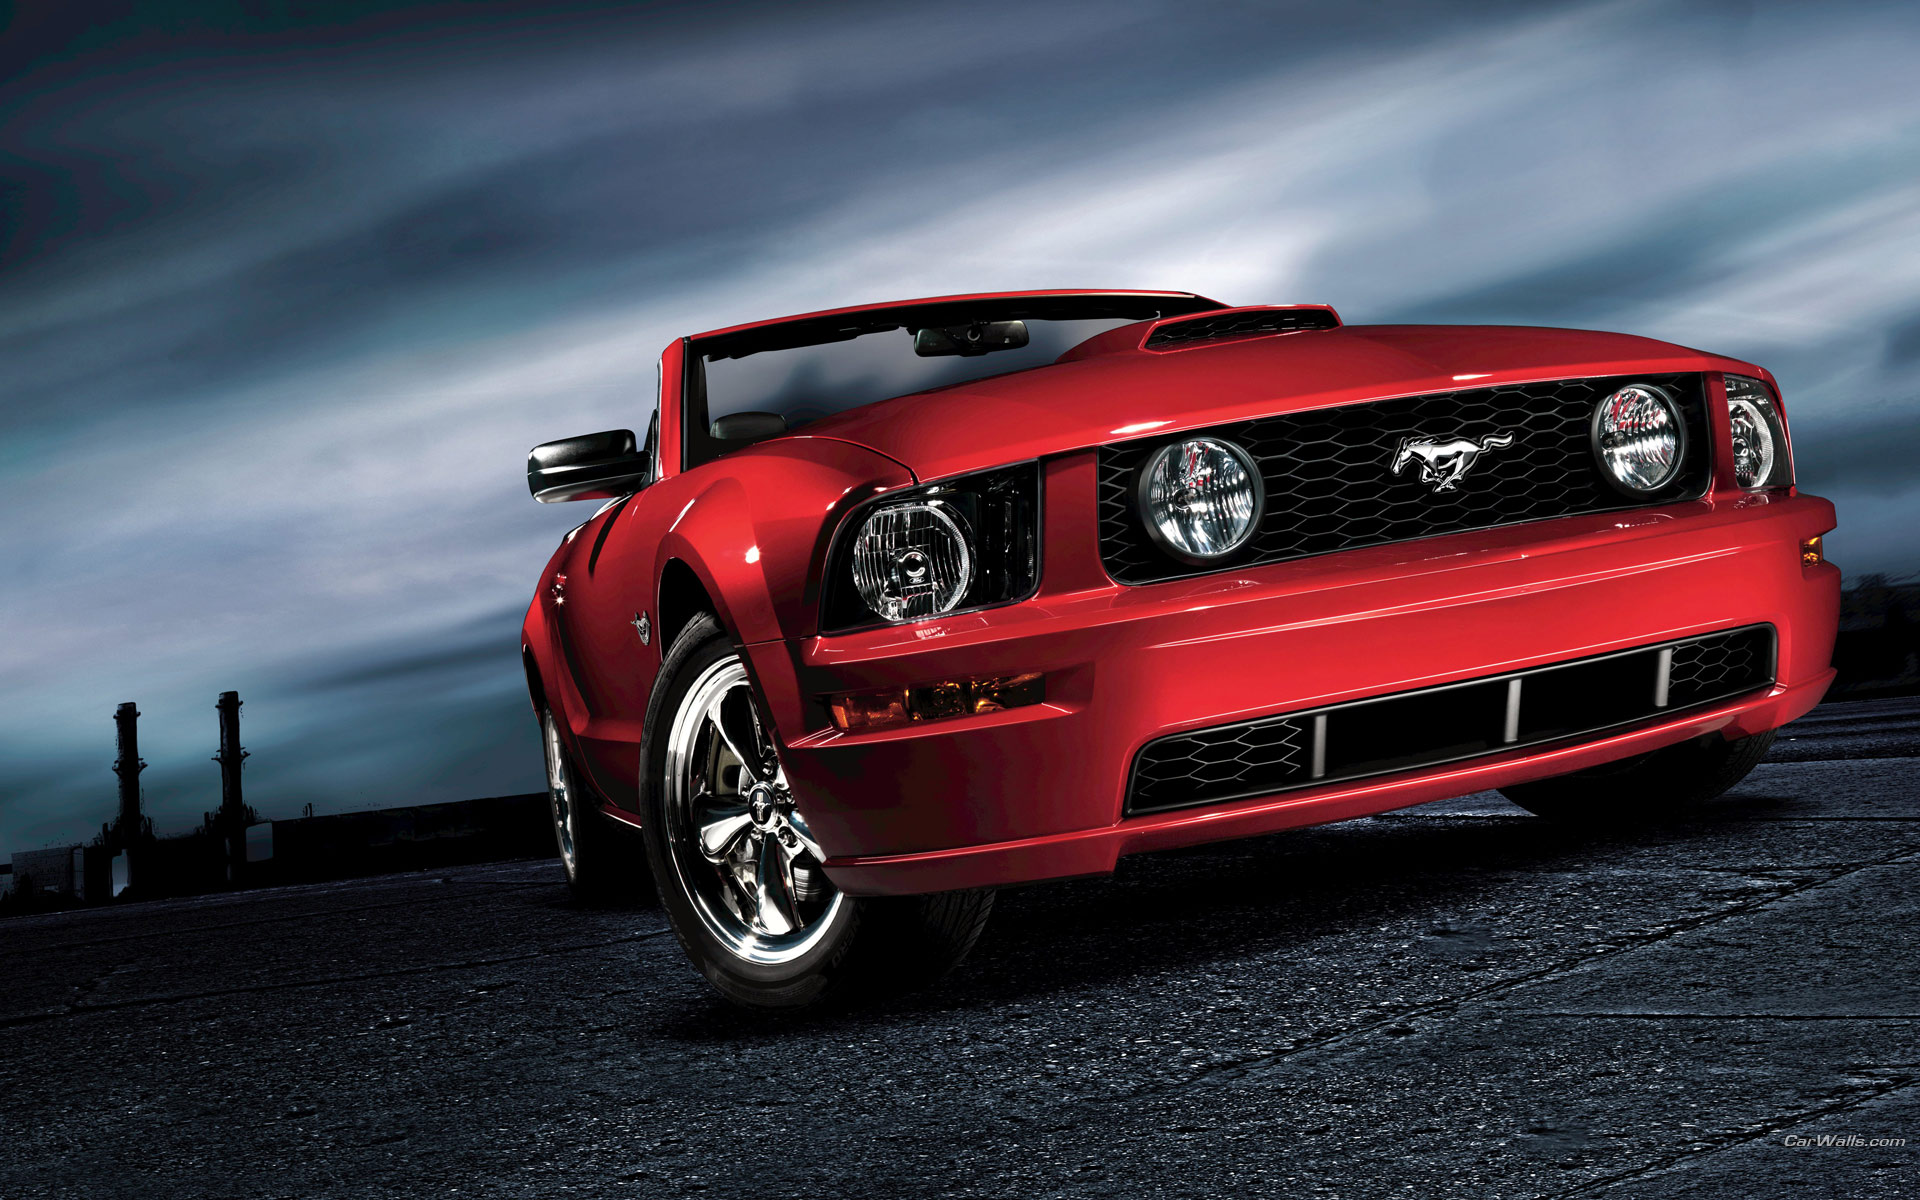 Mustang Car Images Wallpaper Download